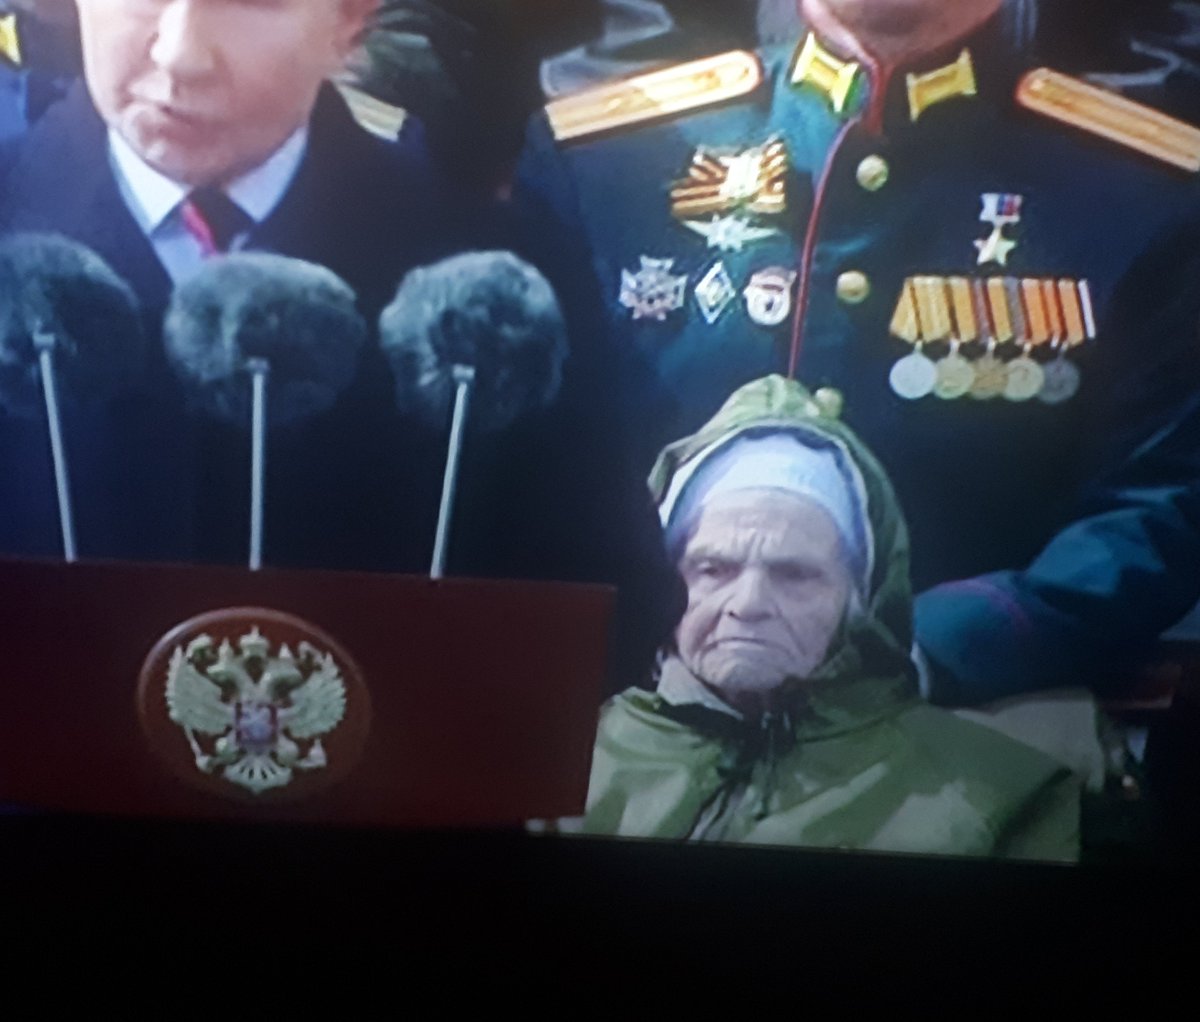 Gledam prenos Parade iz Moskve...
Pored Putina sjedi baba, ratni veteran....
Vid joj face...
Sad bi opet krenula jebat mater Švabama sa bajonetom u rukama! 👍😎